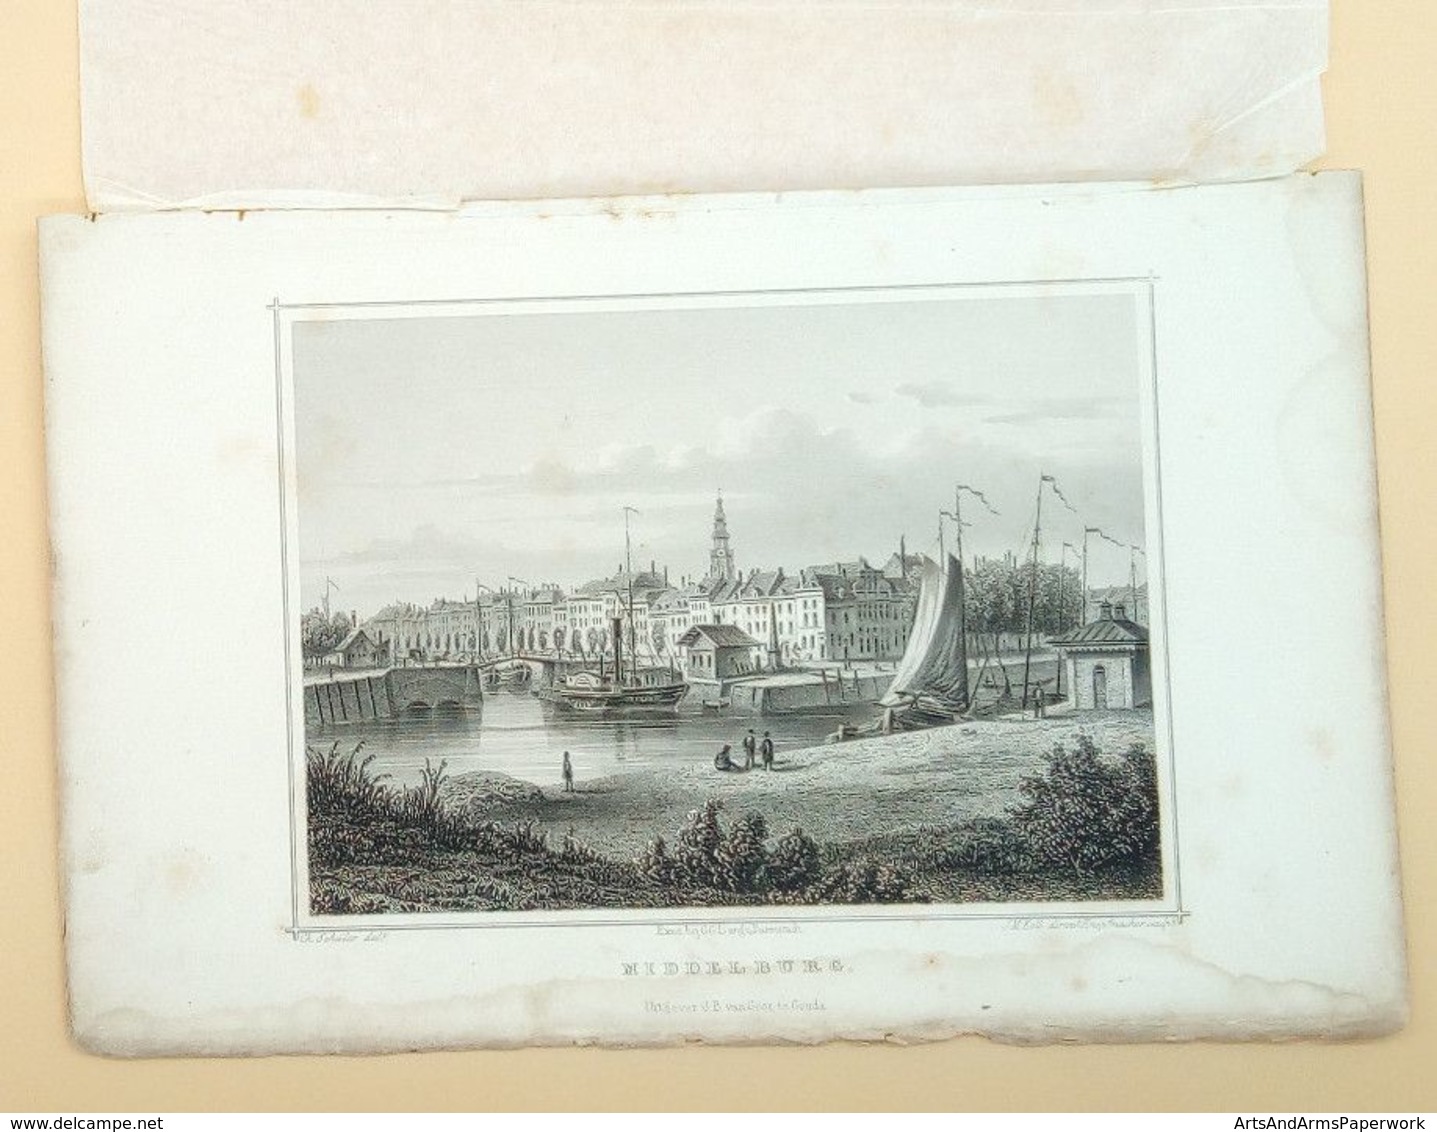 Middelburg 1858/ Middelburg (NL) 1858. Schüler, Kolb, Knopfmacher, ZEELAND - Art